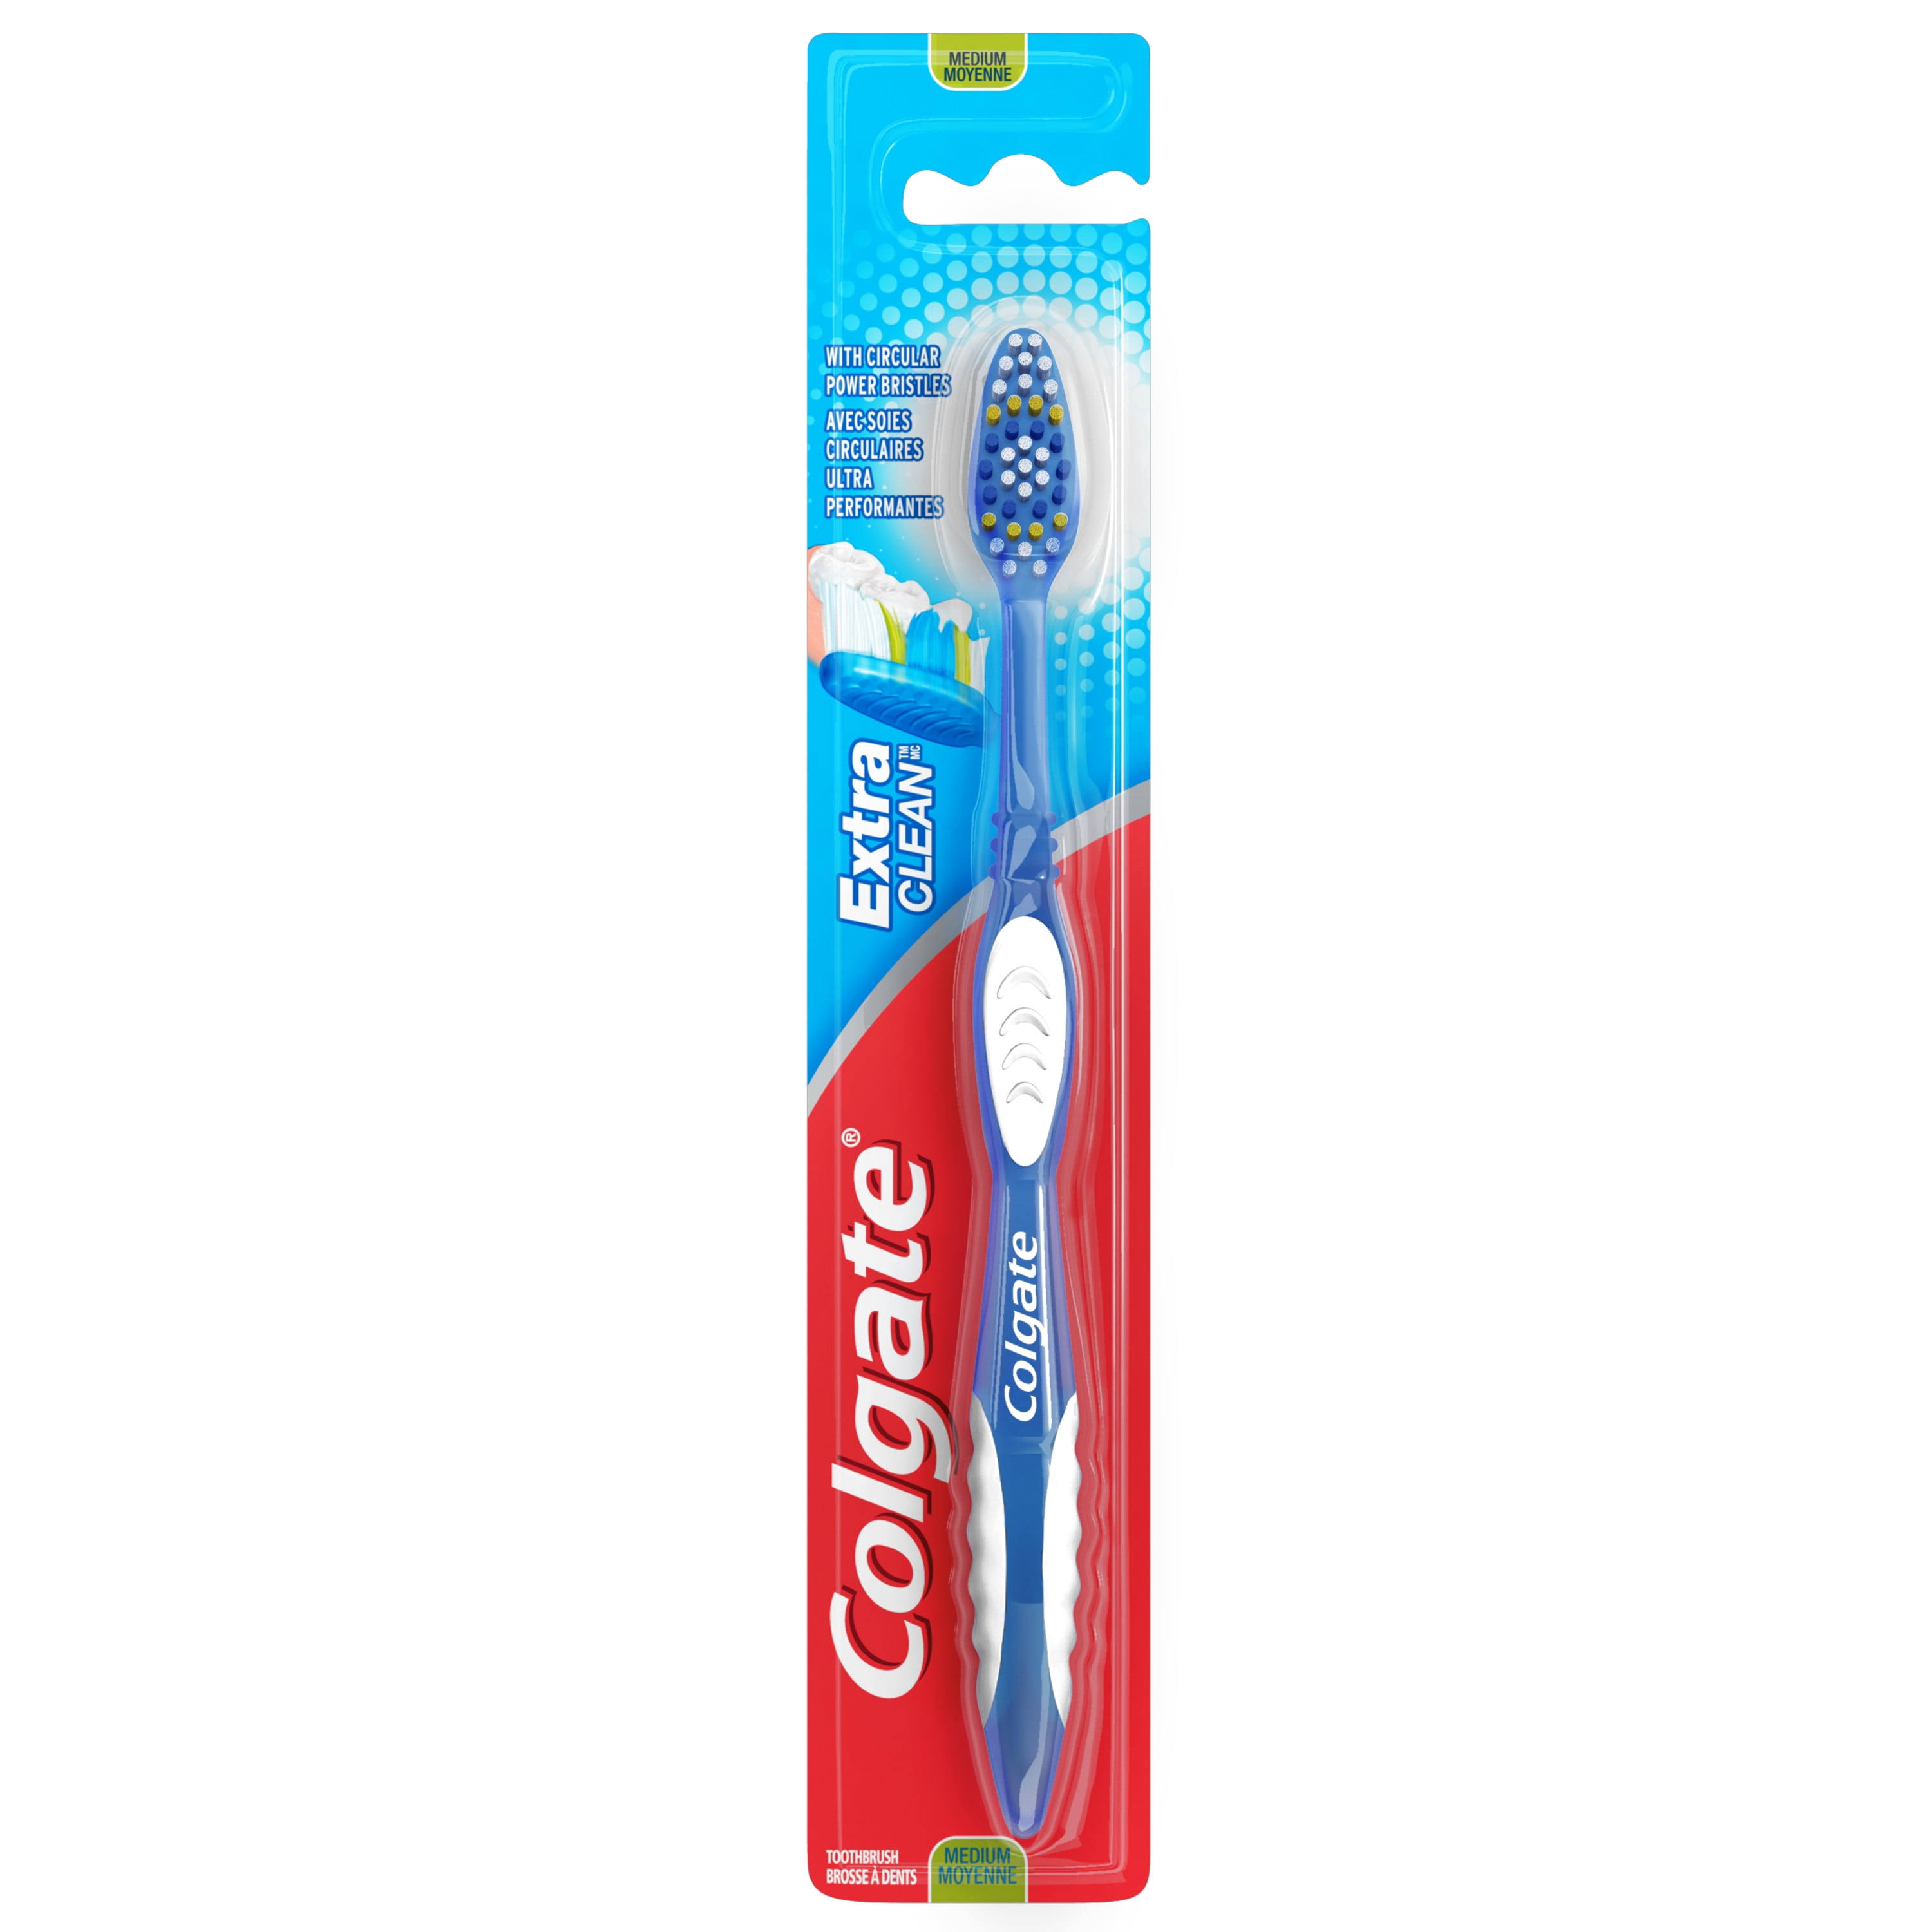 Colgate Extra Clean Toothbrush - Medium